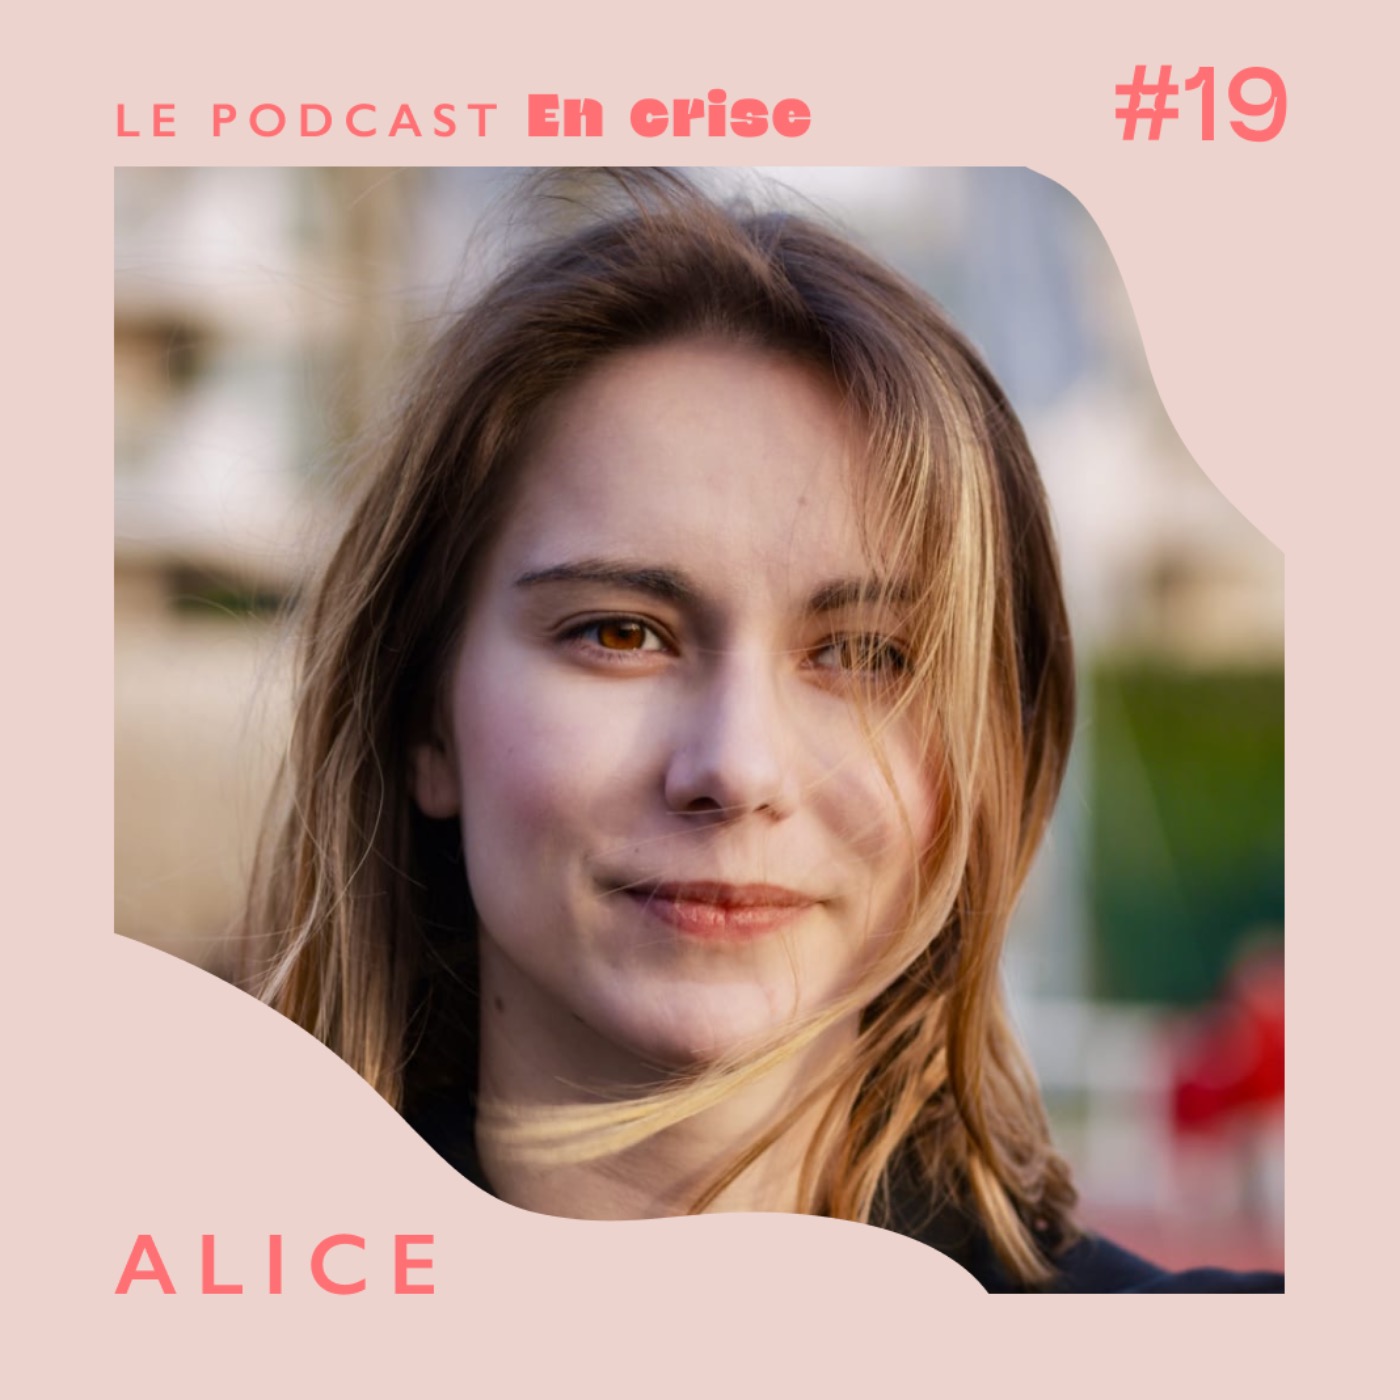 #19 - Alice : "J'ai créé un média sur les handicaps invisibles : celui que j'aurais aimé avoir."